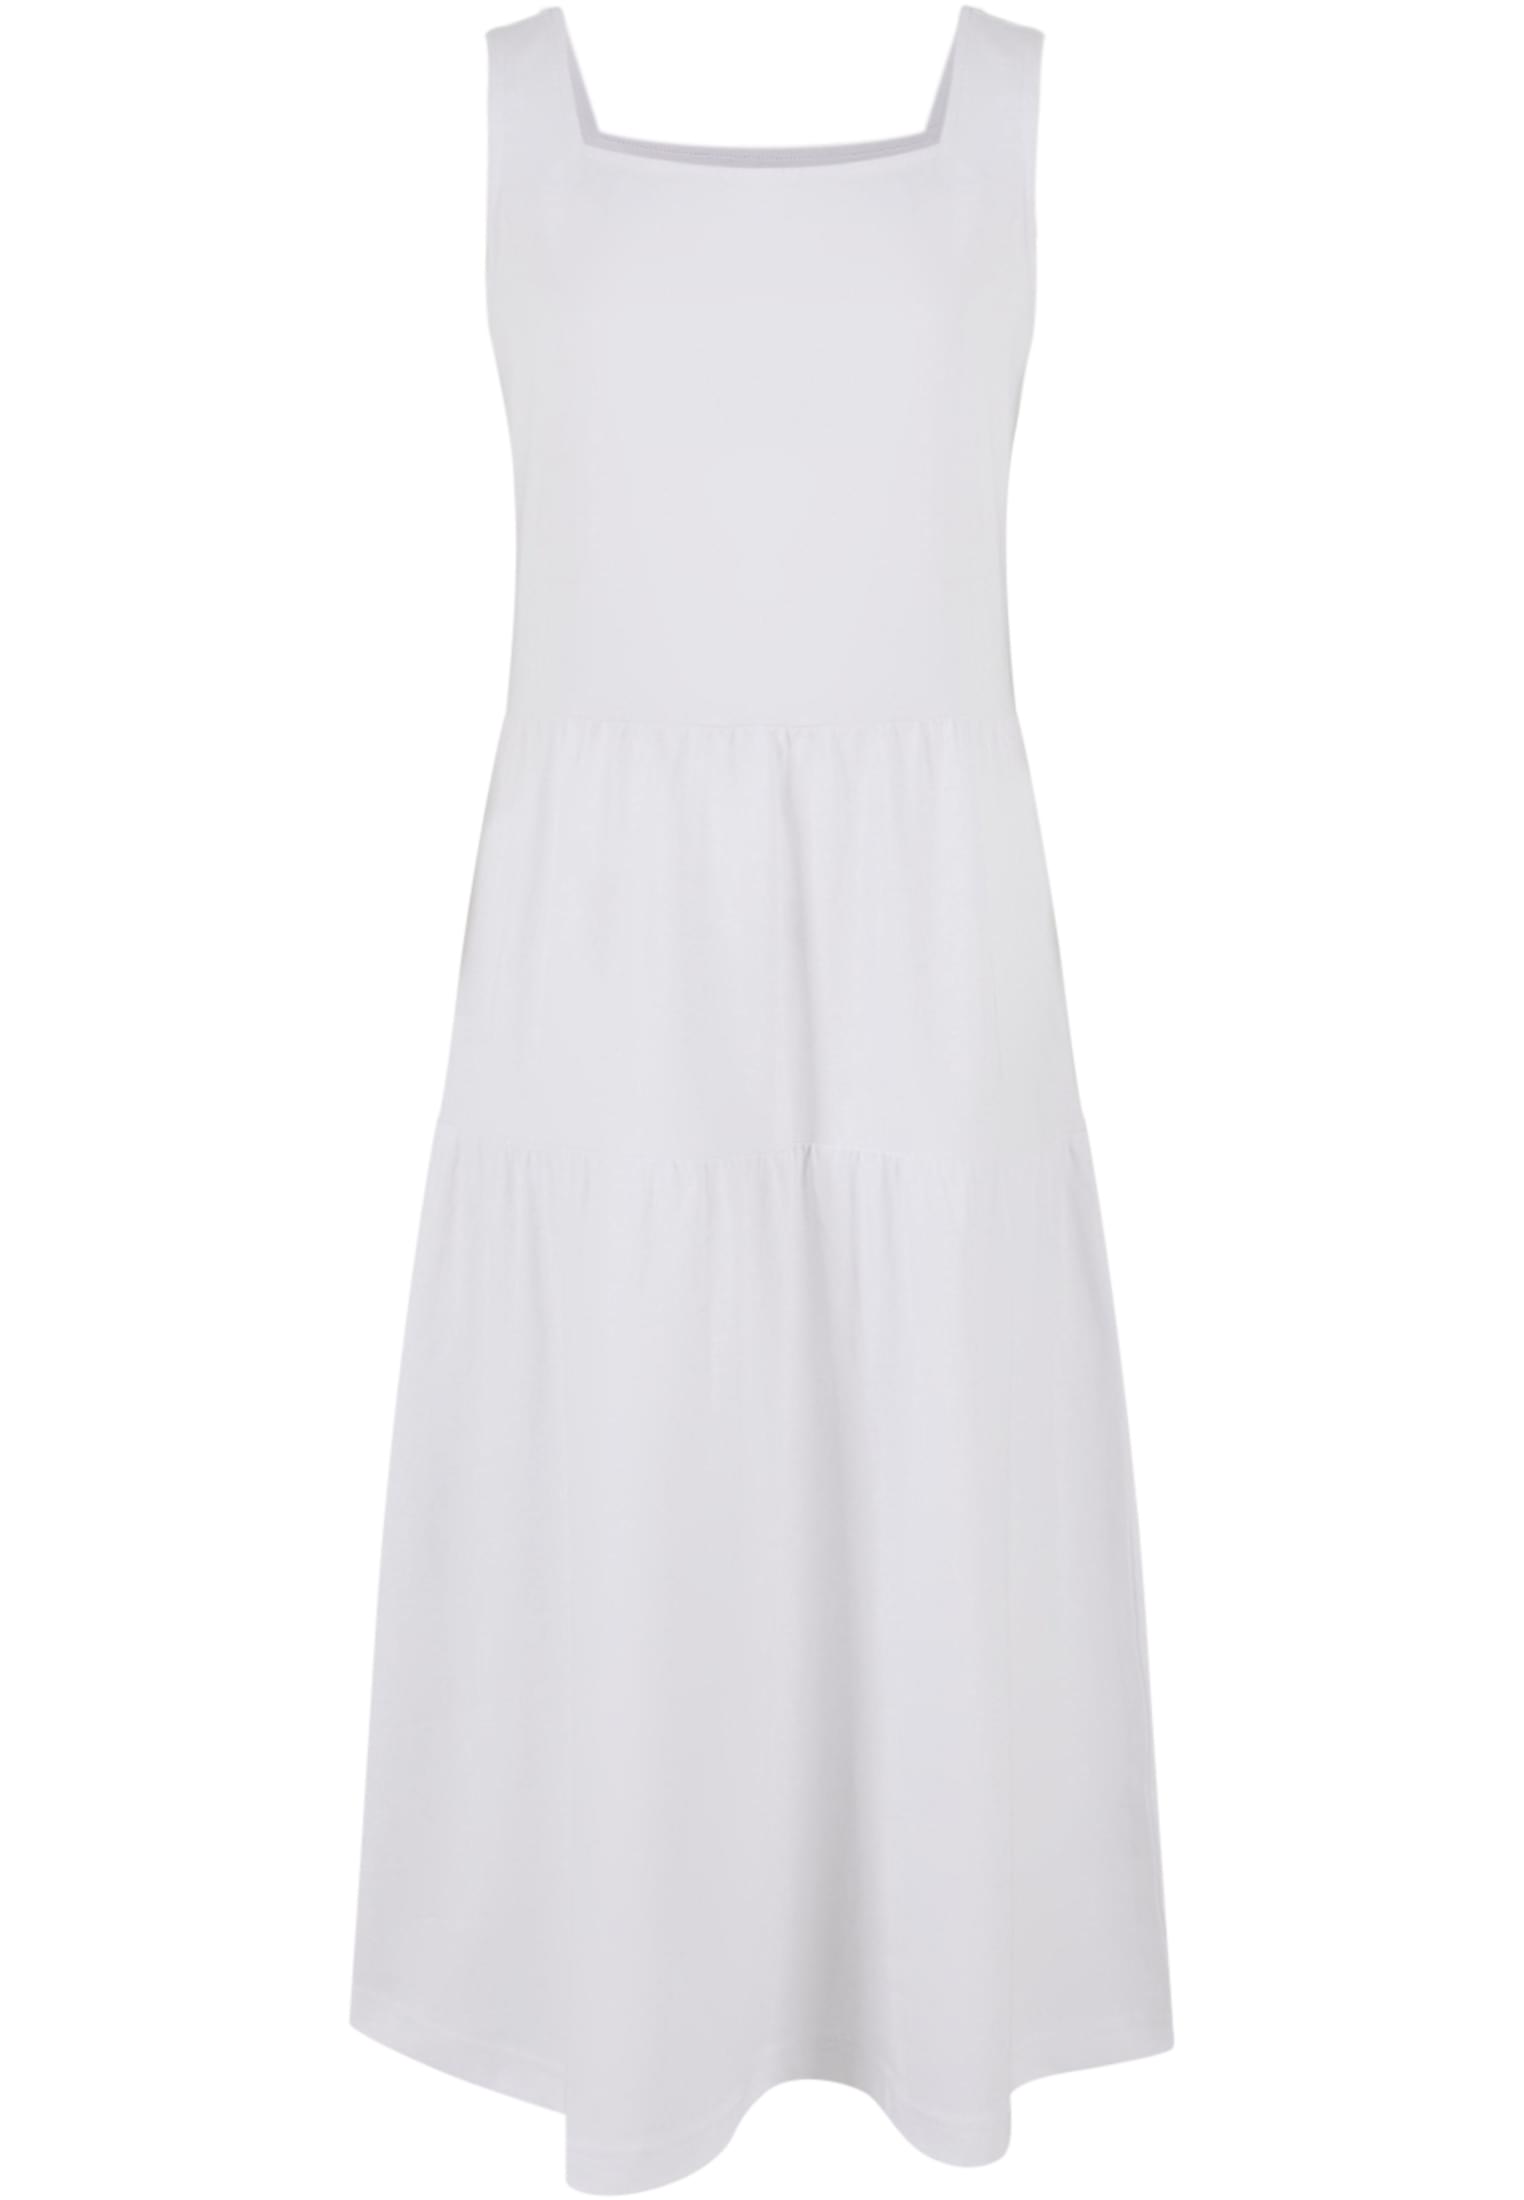 Girls' 7/8 Length Valance Summer Dress - White